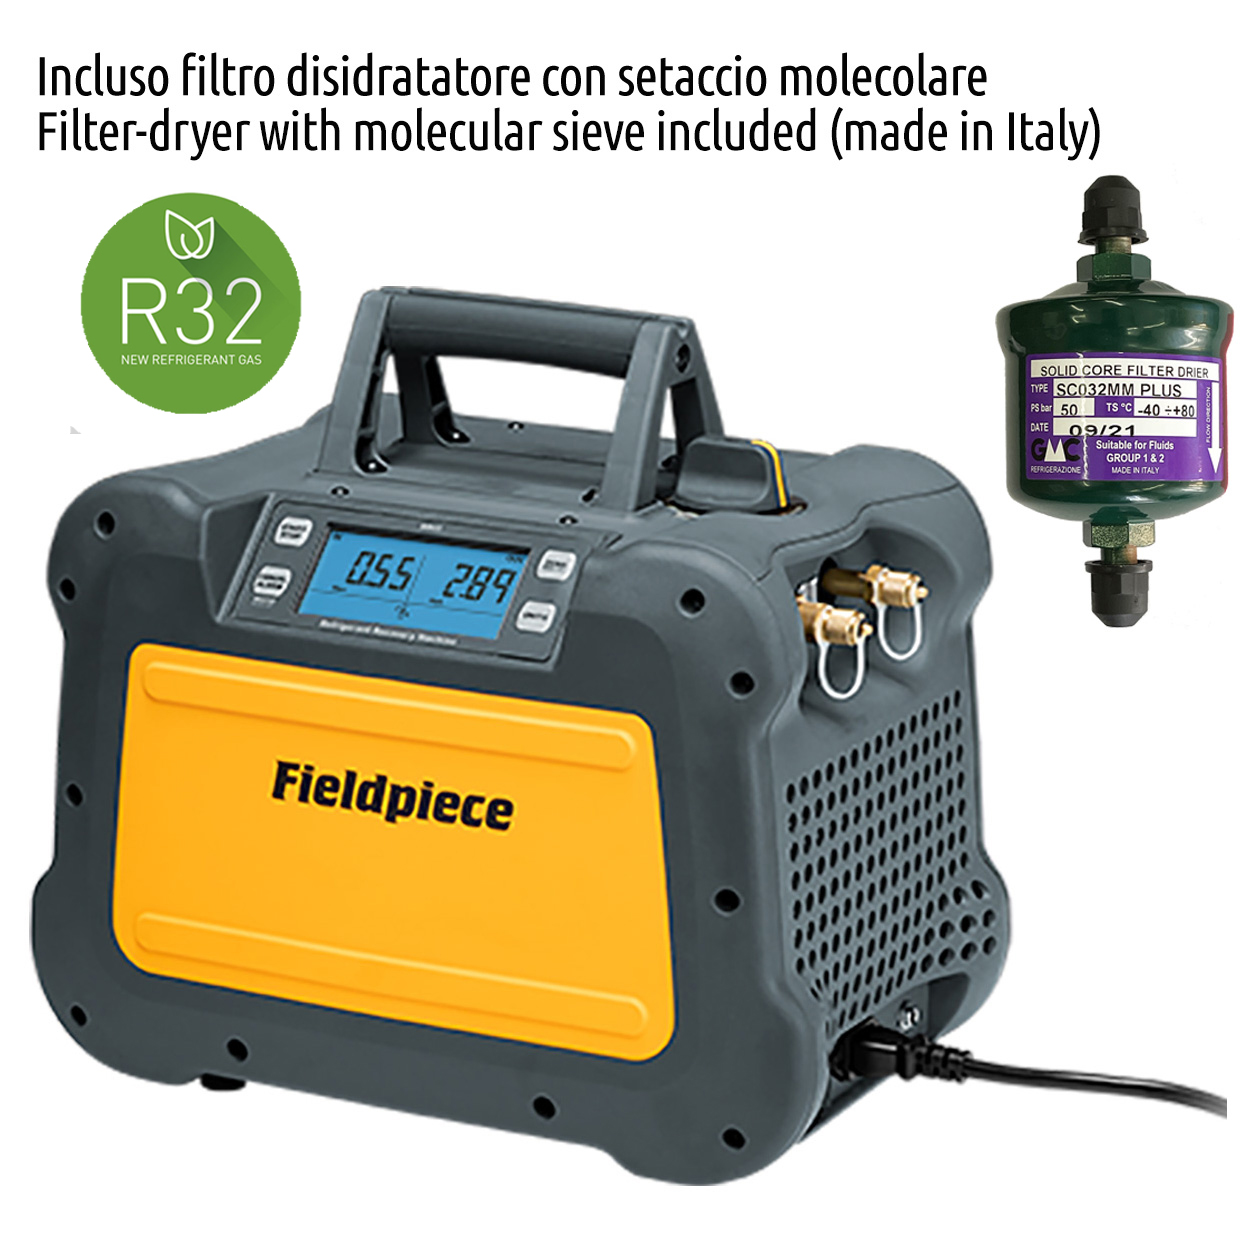 Fieldpiece USA - MR45INT - Recuperatore gas refrigerante digitale da 1 HP - 0,75 Kw completo di filtro disidratatore e raccordo - Foto 1 